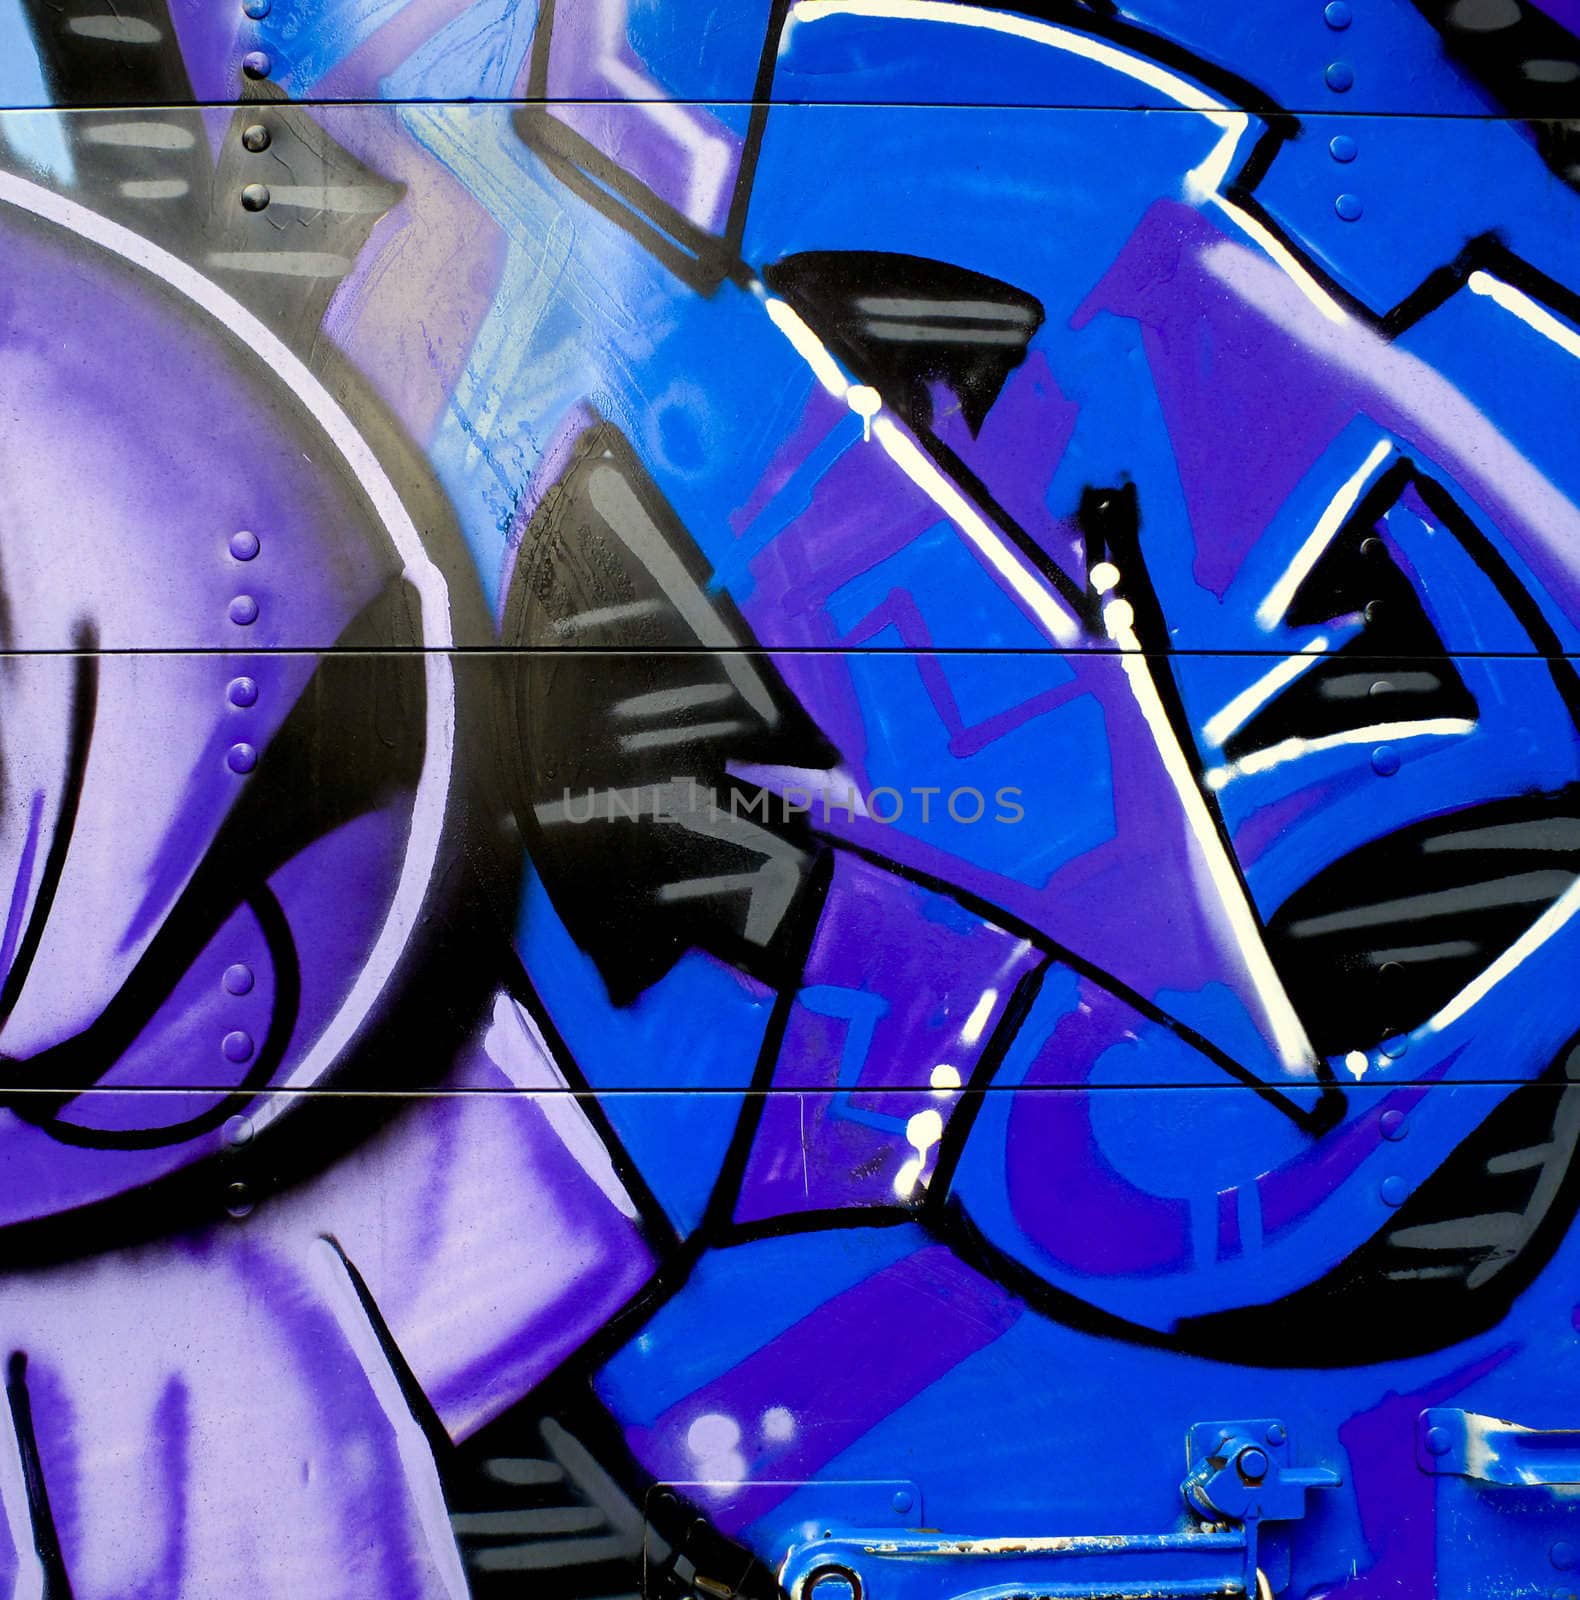 Graffiti on metal by ADavis